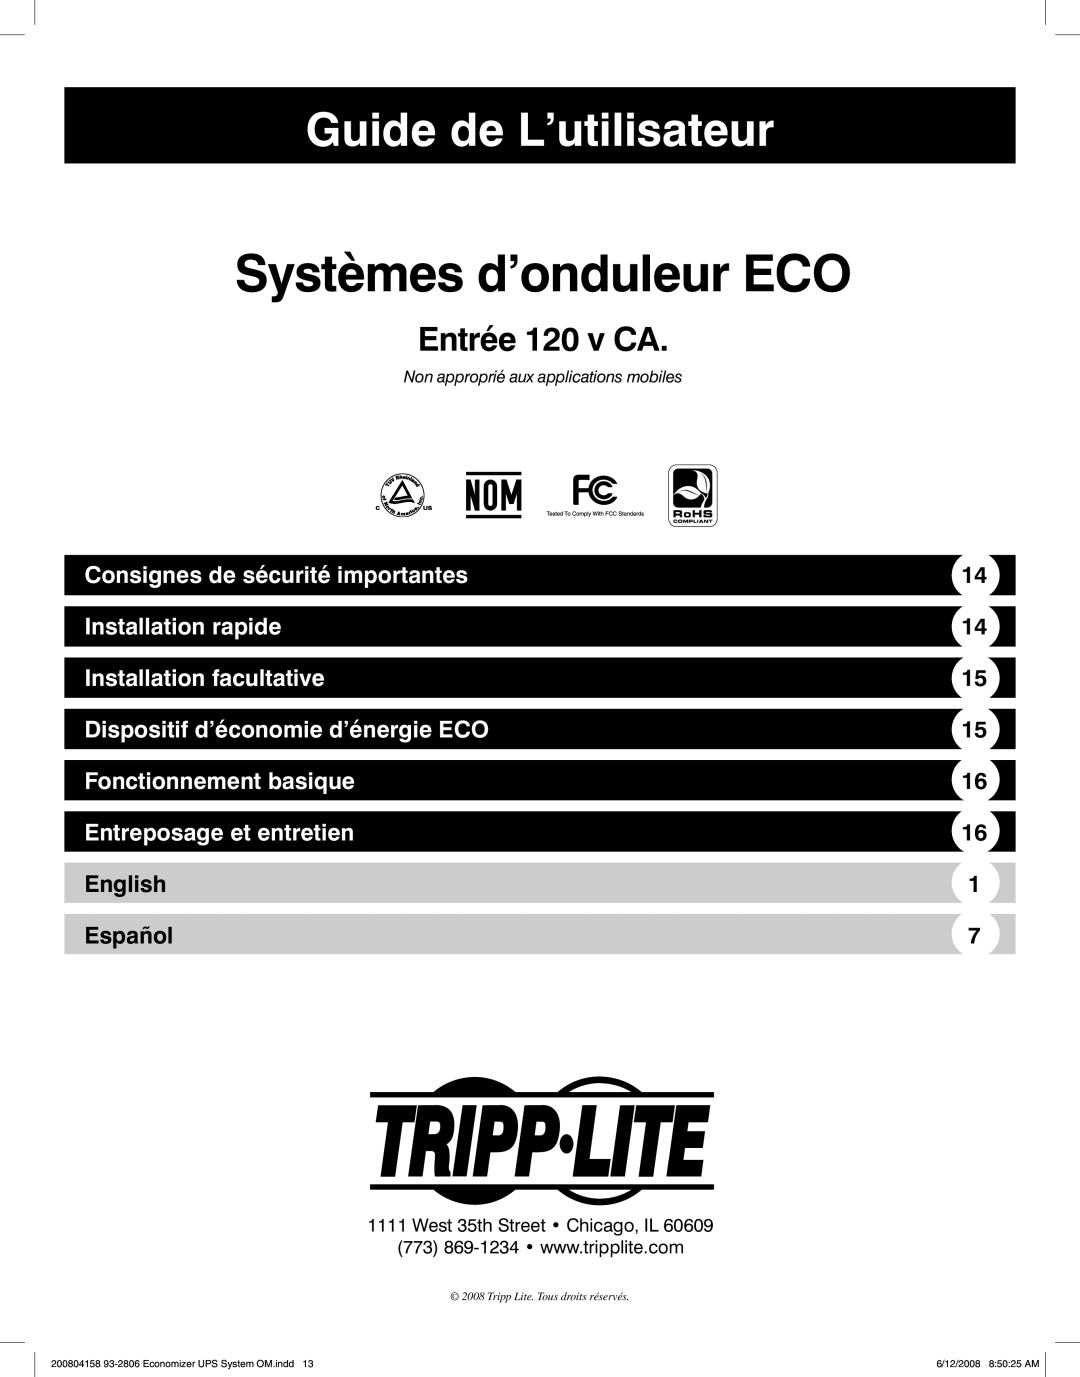 Tripp Lite ECO UPS System Guide de L’utilisateur, Entrée 120 v CA, Consignes de sécurité importantes, Installation rapide 